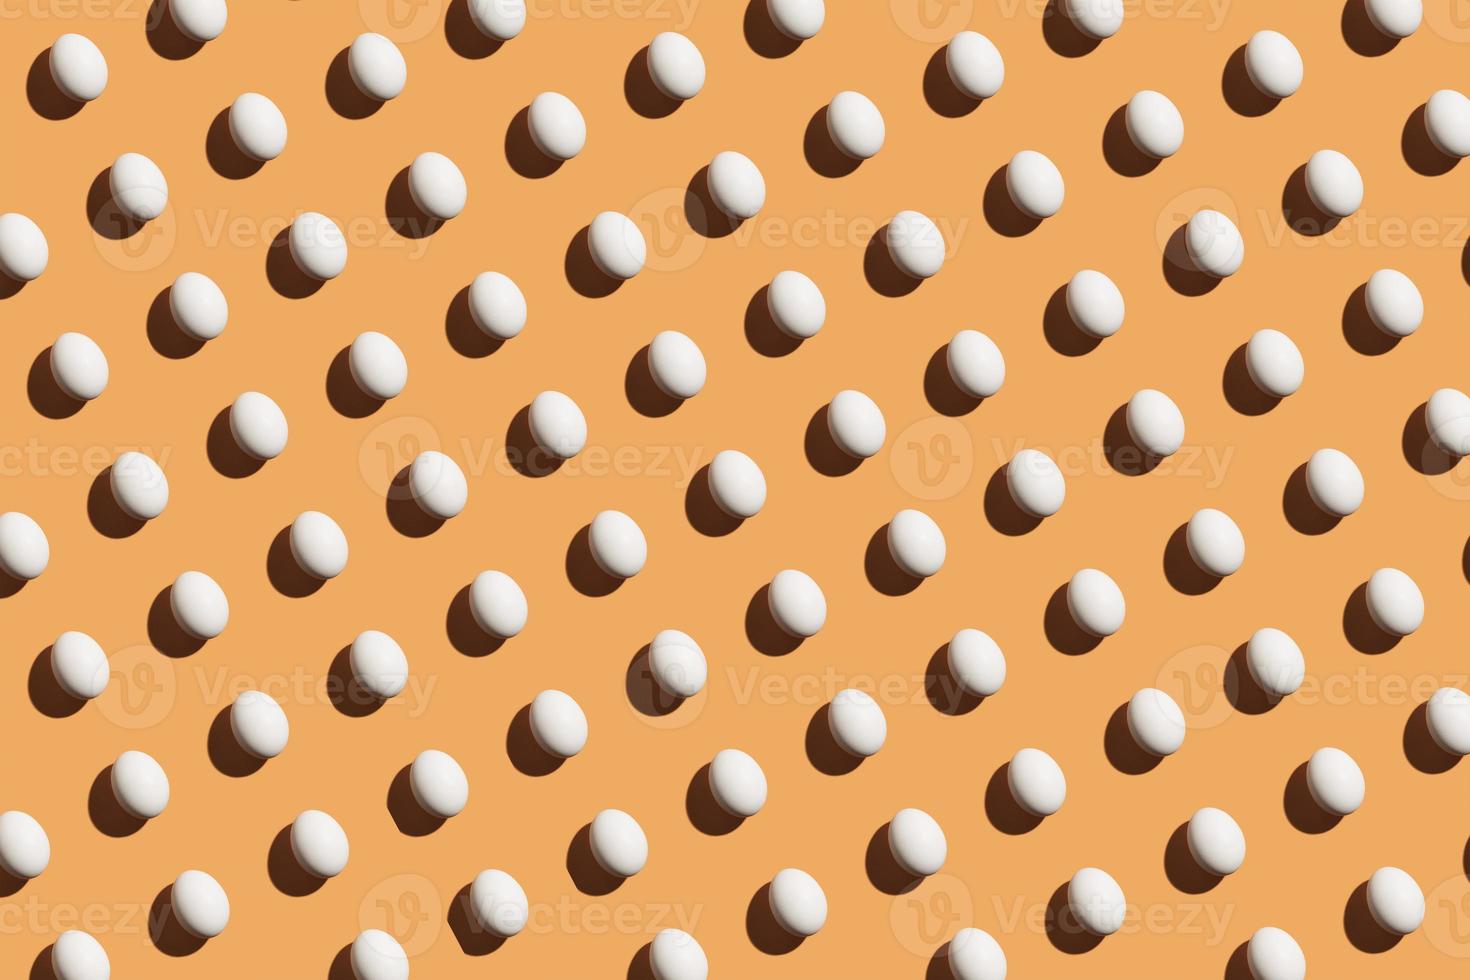 padrão mínimo feito de ovos brancos sob luz forte com sombras escuras em fundo laranja foto